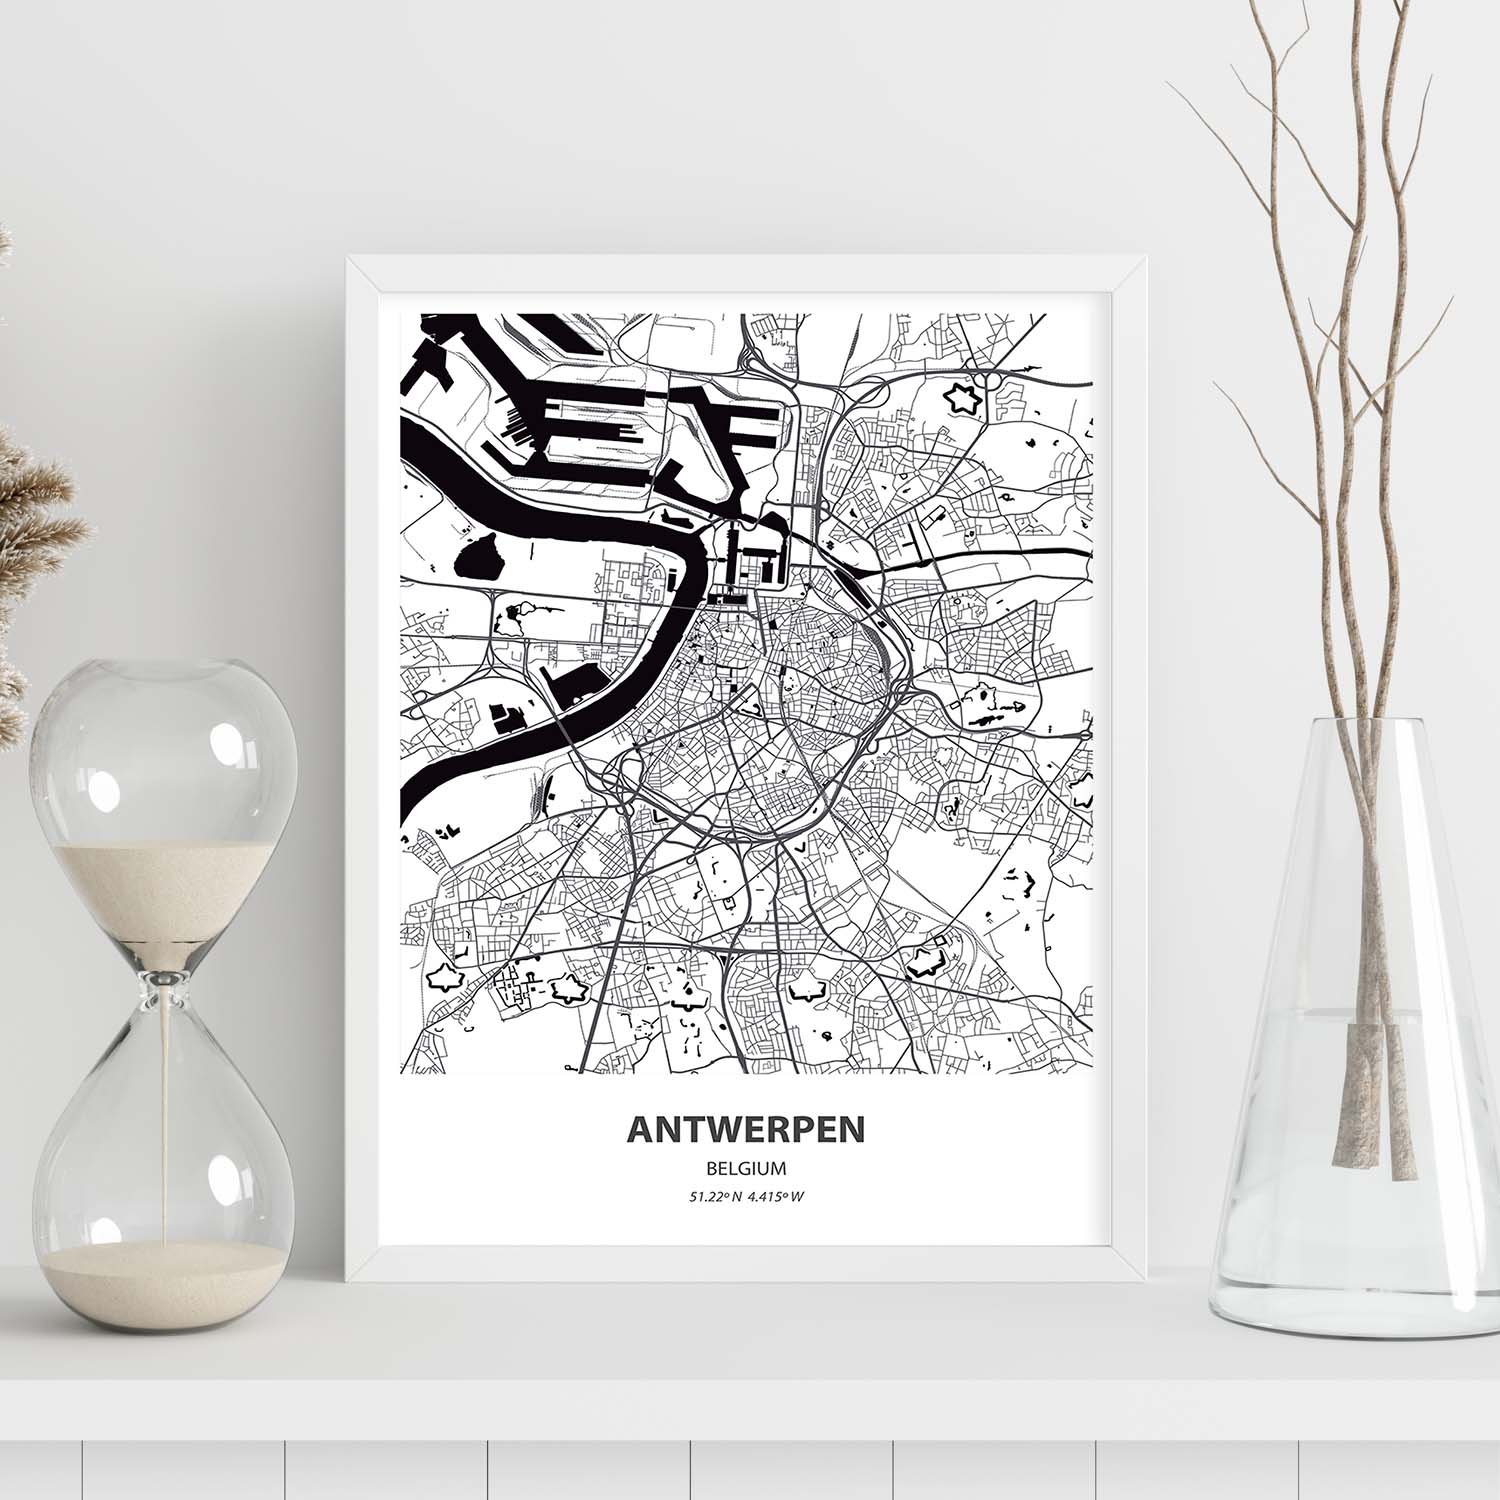 Poster con mapa de Antwerpen - Belgica. Láminas de ciudades de Holanda y Bélgica con mares y ríos en color negro.-Artwork-Nacnic-Nacnic Estudio SL